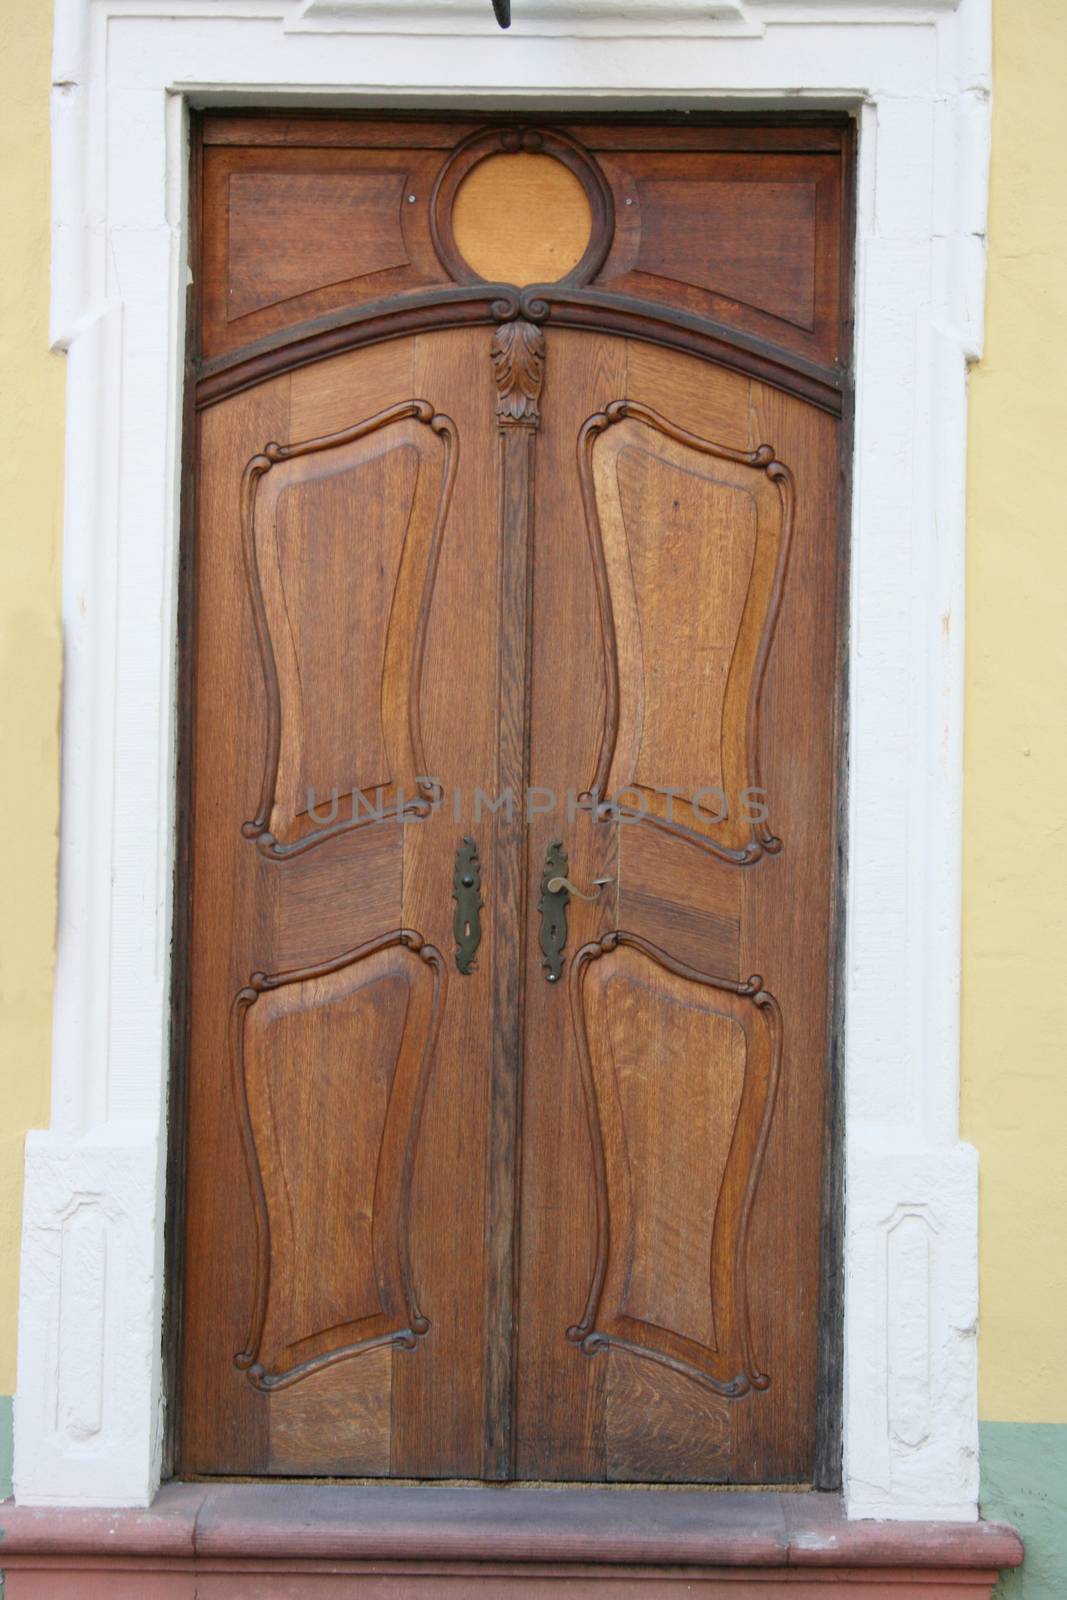 an old carved wooden door pattern with imagination    eine alte verzierte Holzhaust�r,mit Phantasie musterefm�tterchen